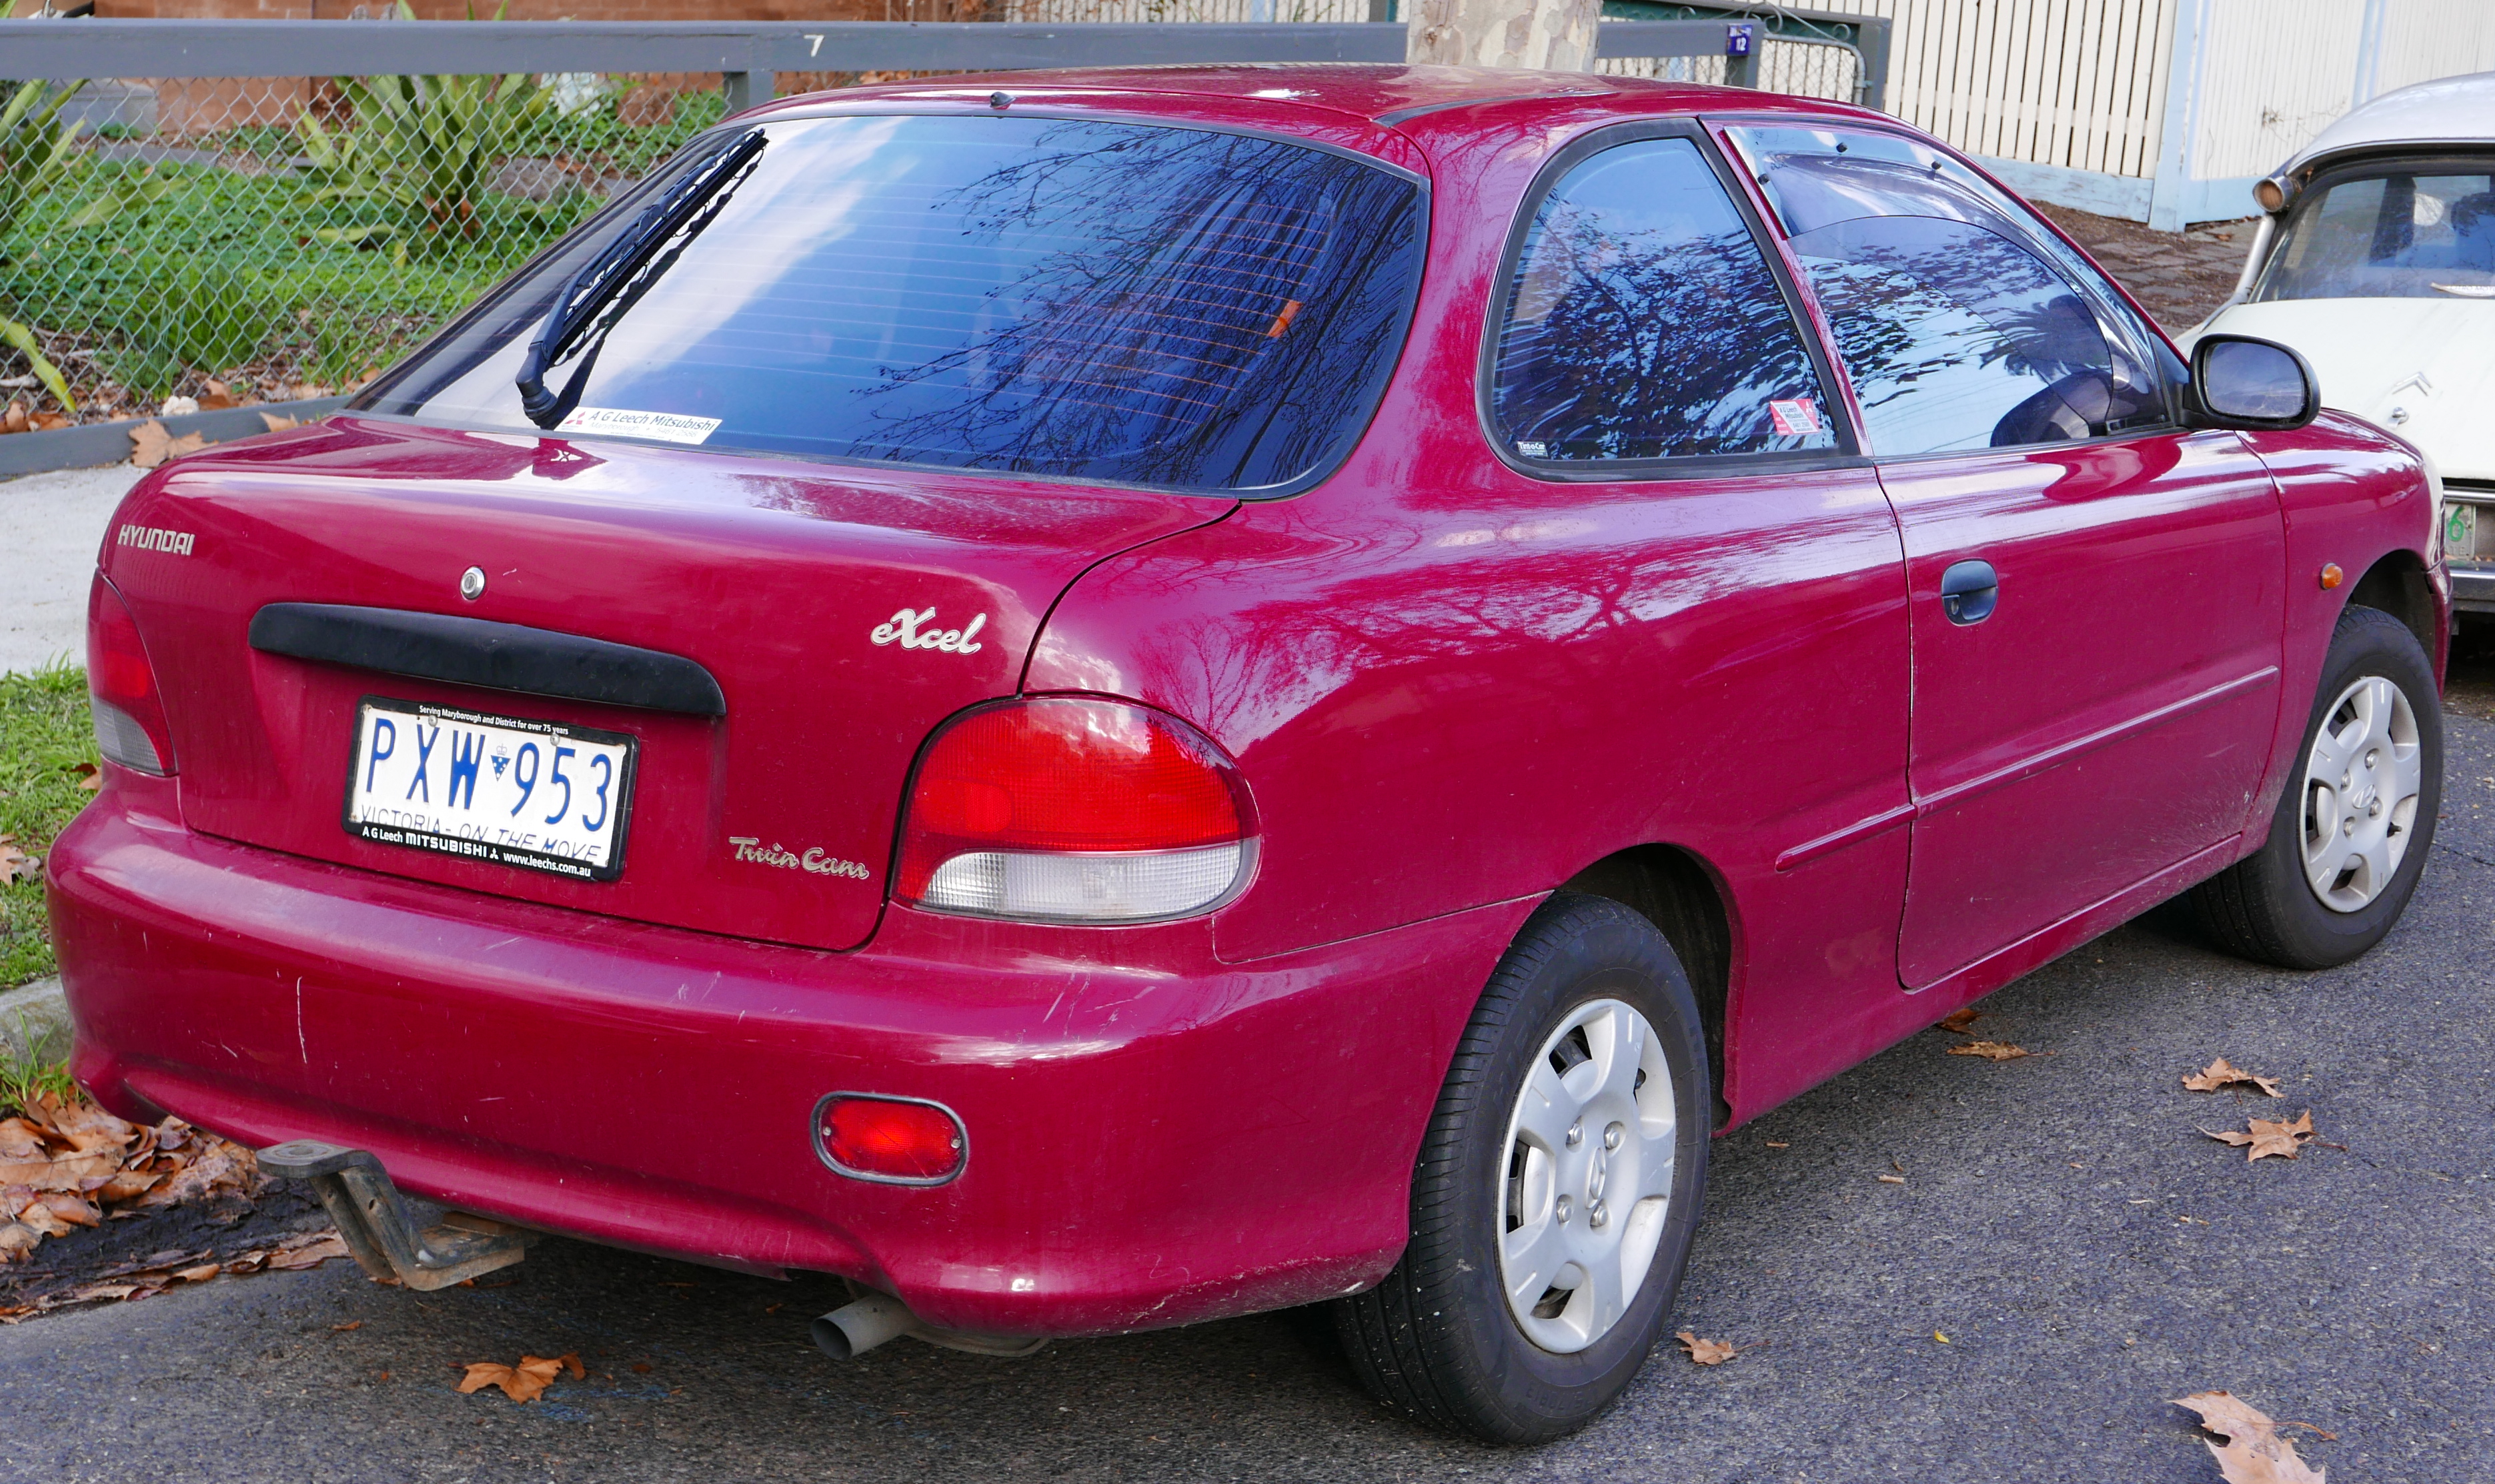 Hyundai excel 1999